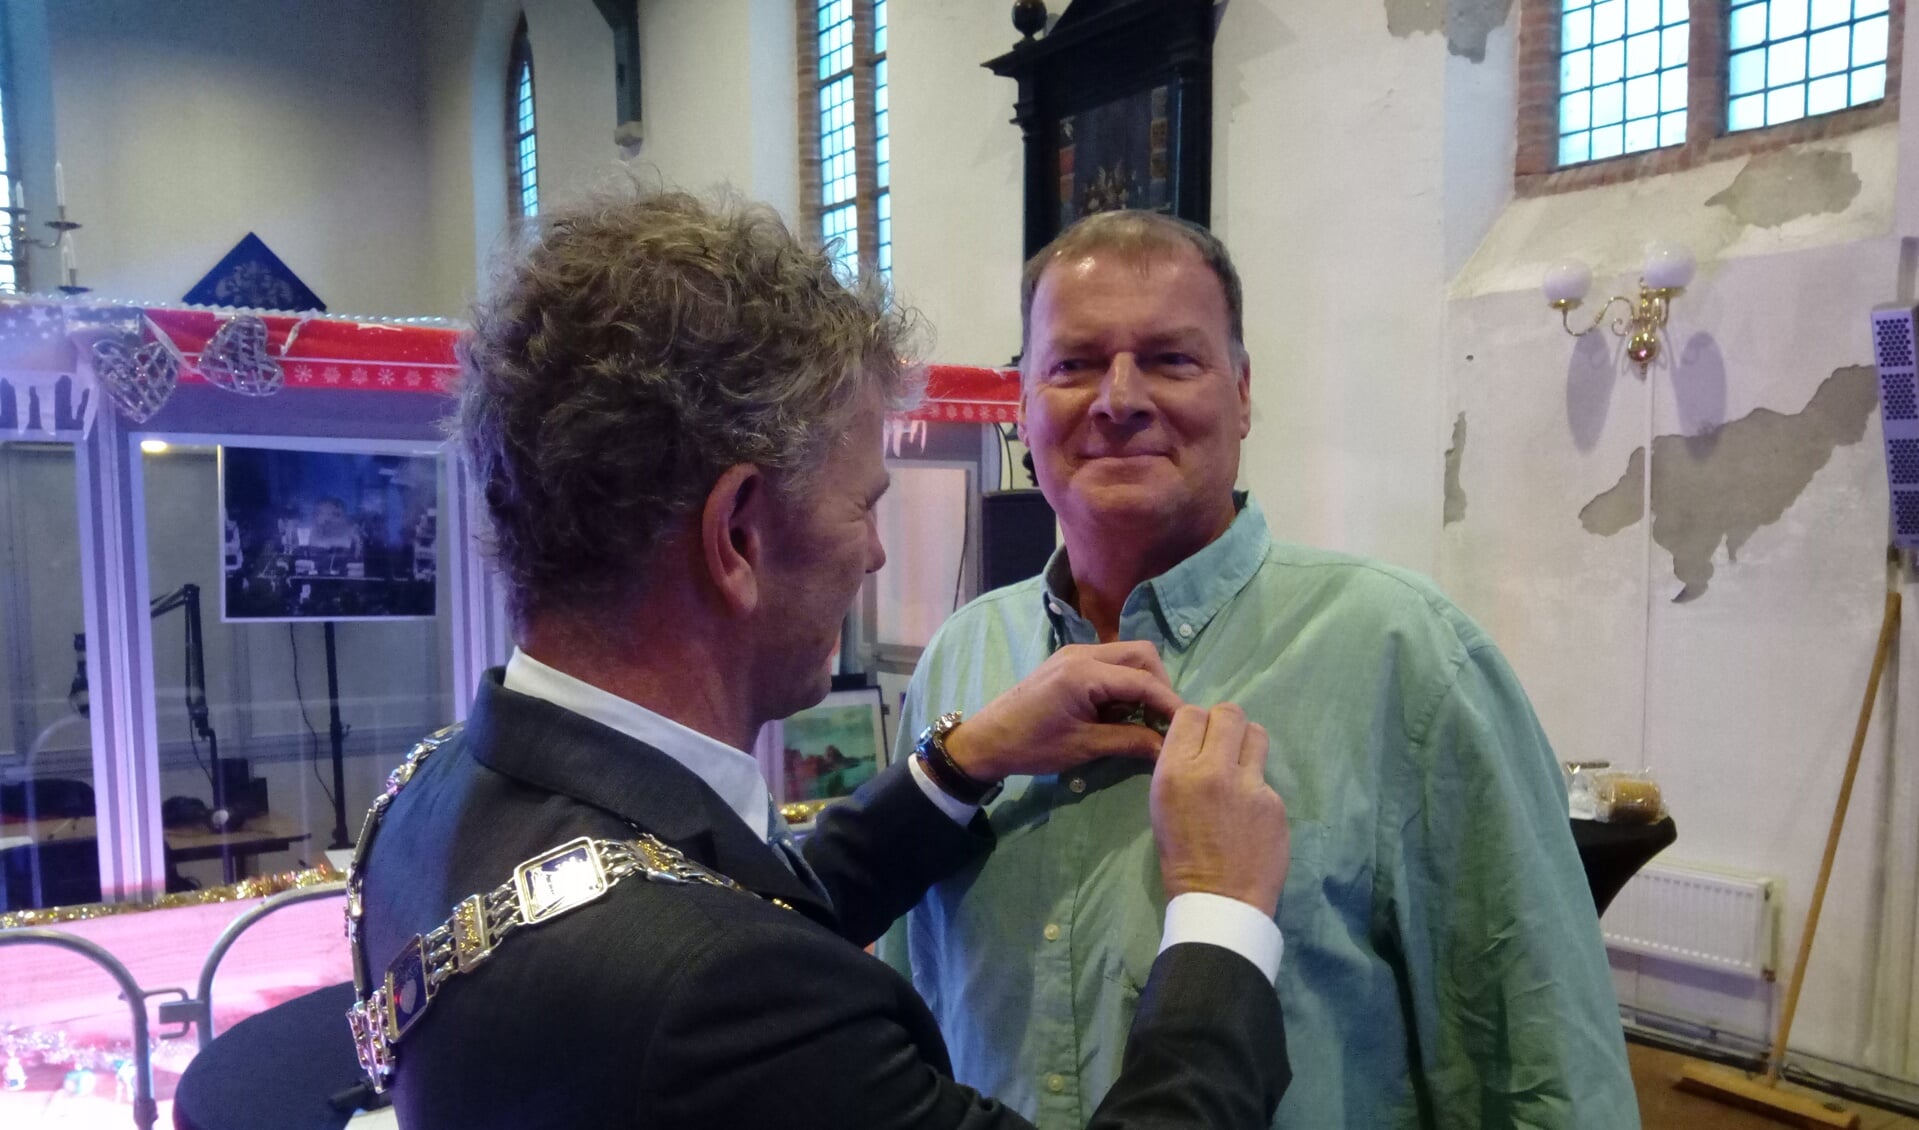 Burgemeester Martijn Smit reikte vorige week woensdagmiddag de Koninklijke onderscheiding aan Ab Jenema uit. (Foto: Bos Media Services)